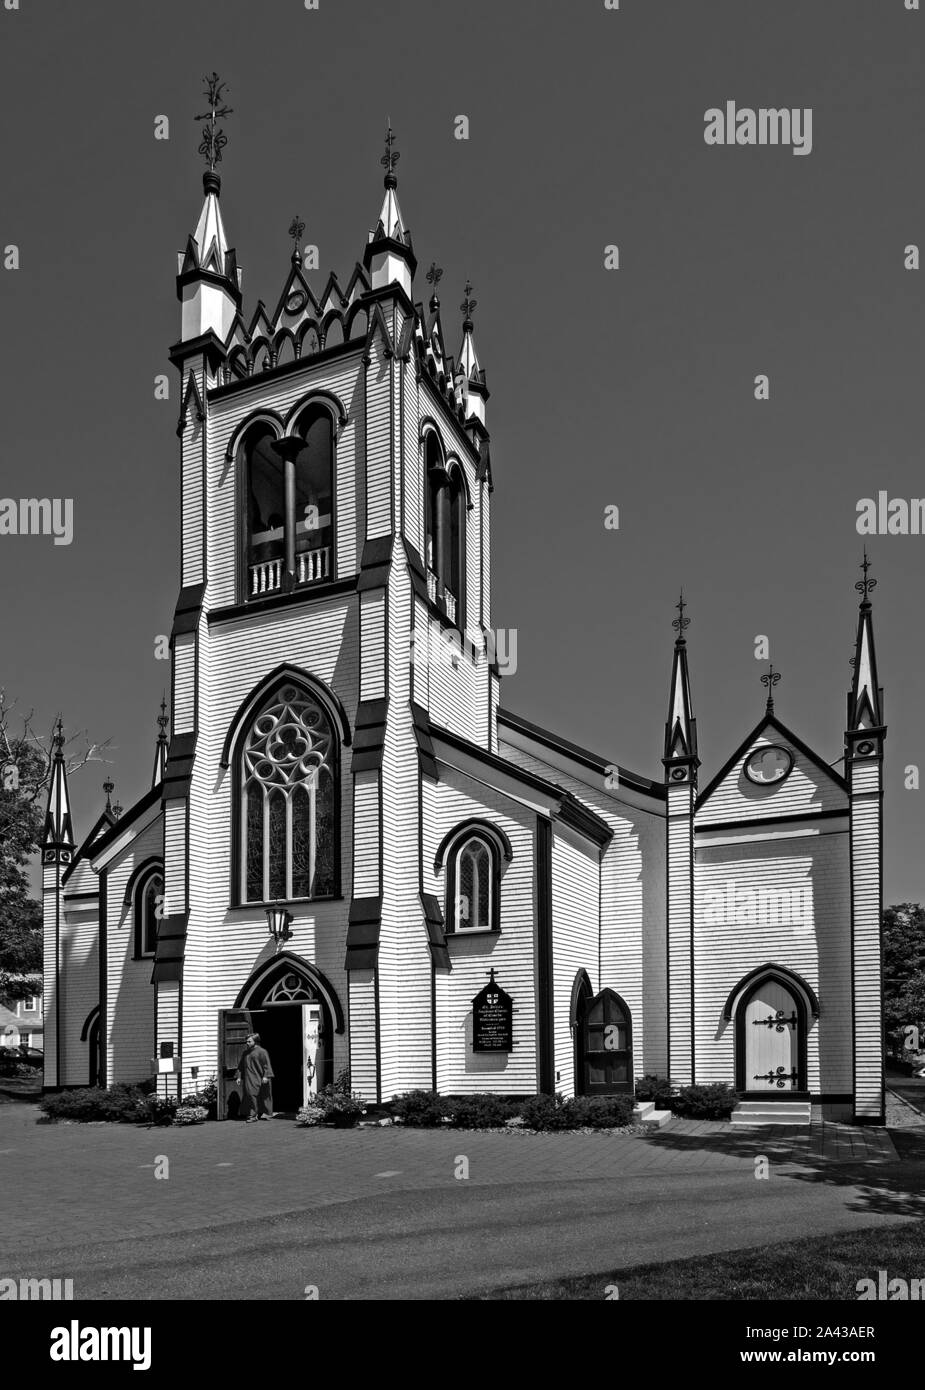 Lunenburg, Nouvelle-Écosse, Canada - St. John's Anglican Church, très ornementées dans un style gothique Charpentier. Une personne en habit clérical quitte l'église. Banque D'Images